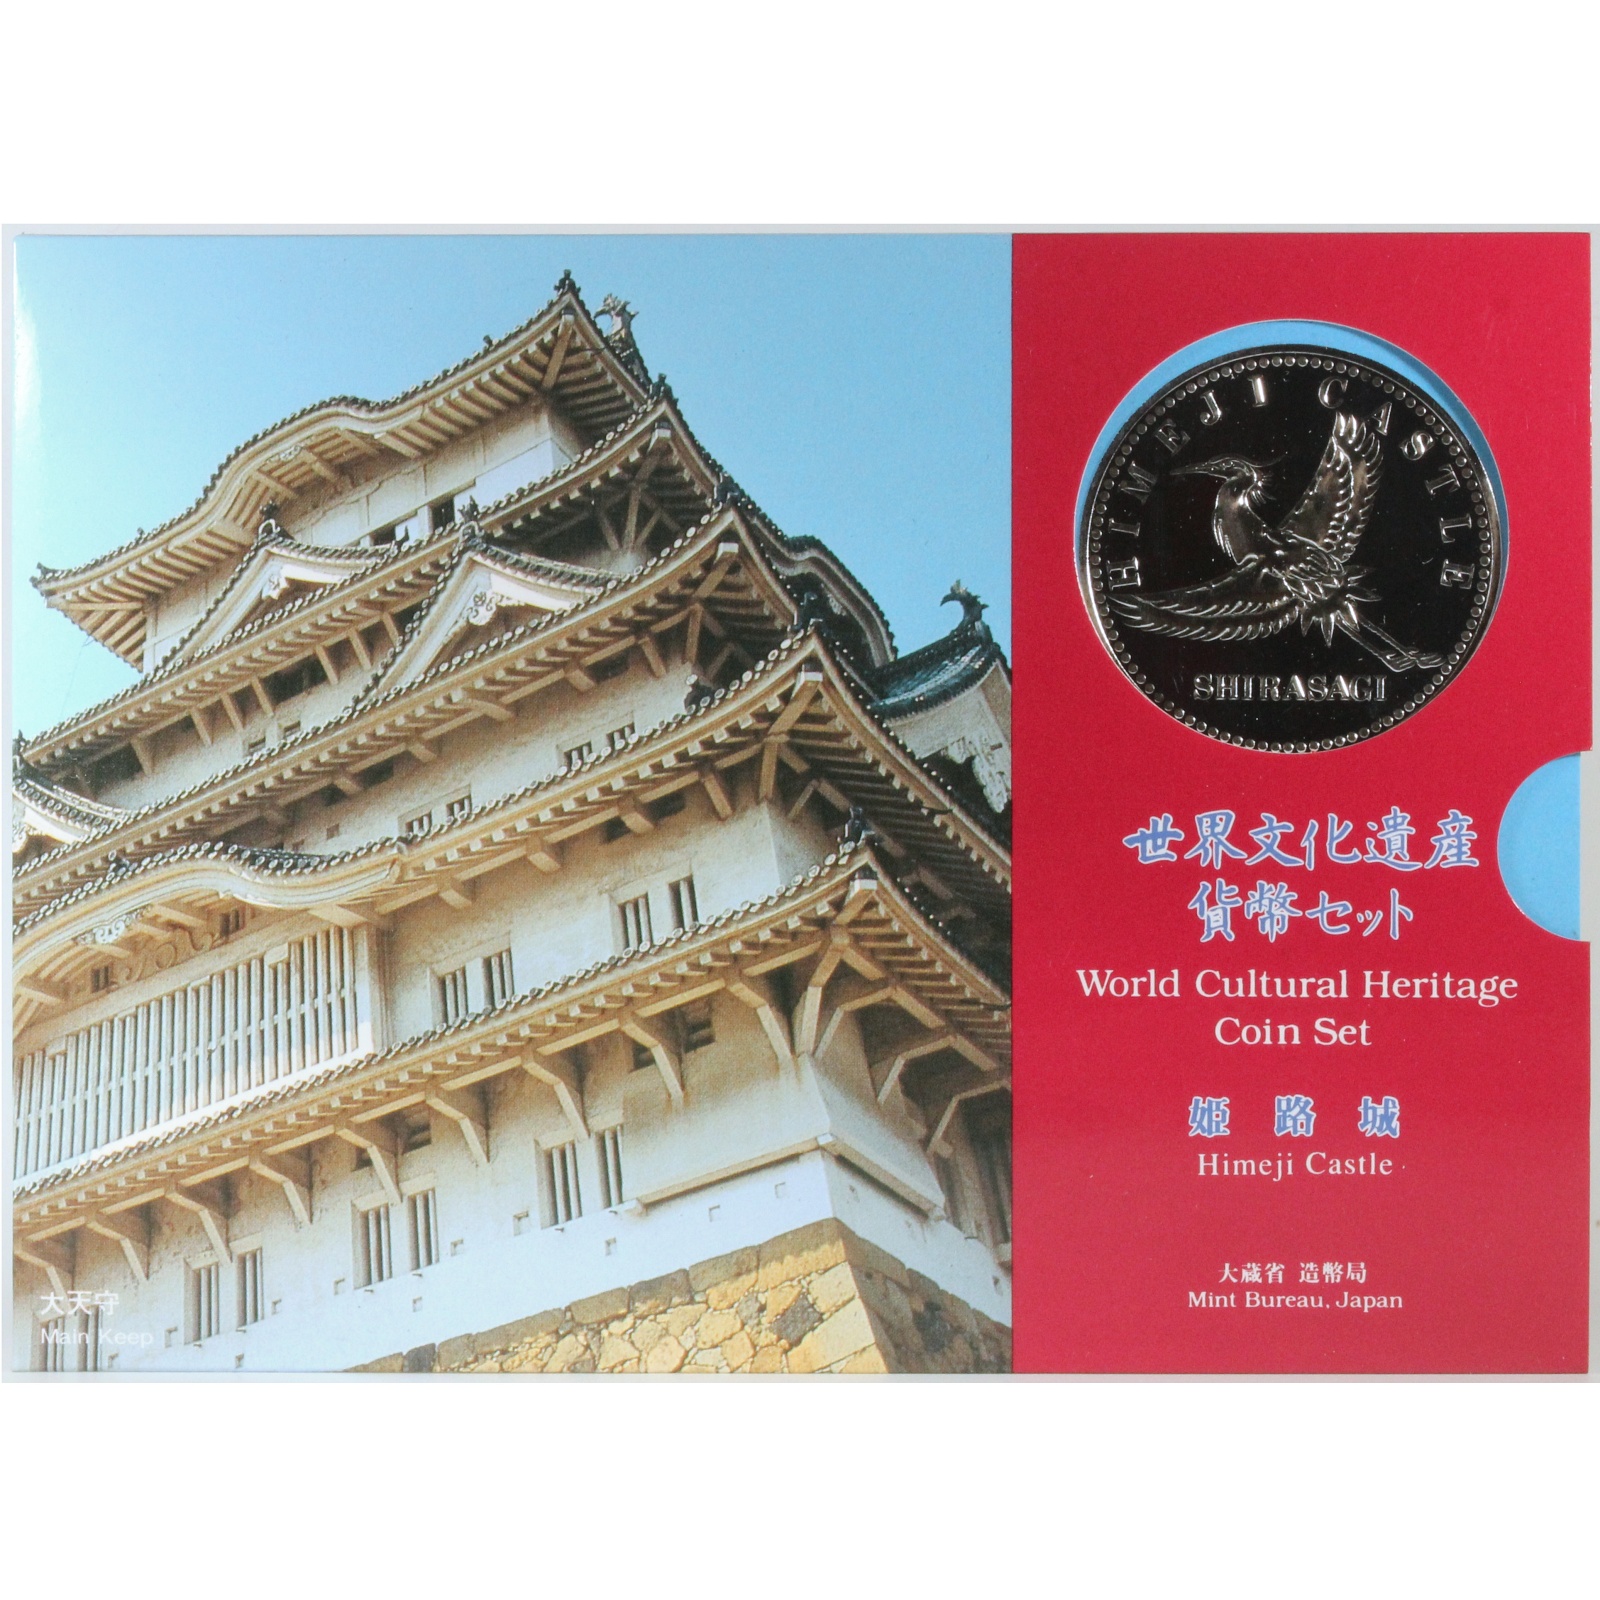 世界文化遺産 貨幣セット 姫路城 平成7年 1995年 コインセット 造幣局